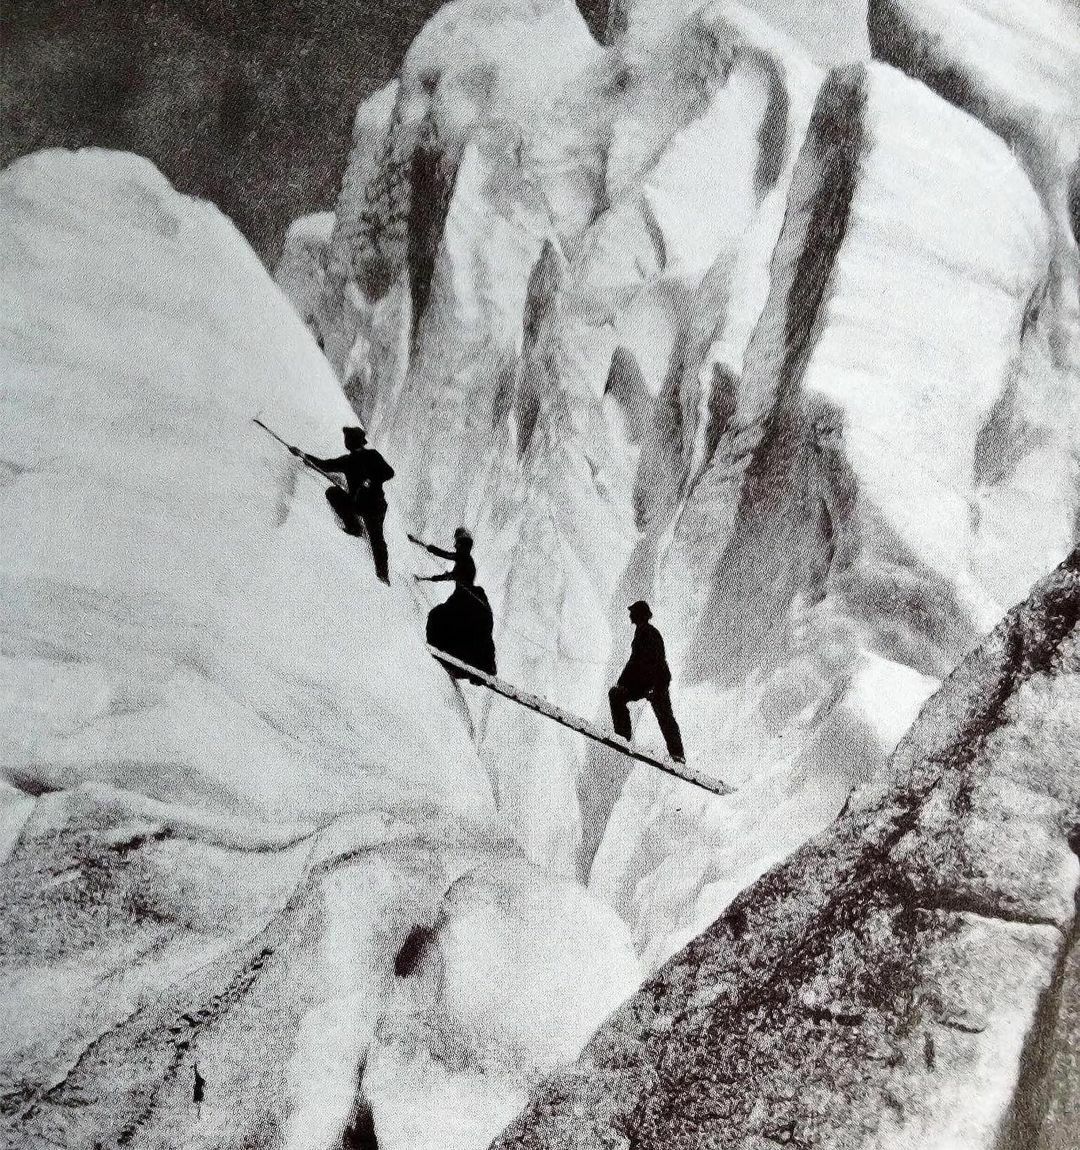 Des alpinistes de la fin de l’ère victorienne traversent une crevasse dans les Alpes en 1900. Apparemment, c’était un crime de la mode d’être surpris mort dans autre chose que ses plus beaux vêtements, même lorsqu’on escaladait certaines des montagnes les plus dangereuses du monde.